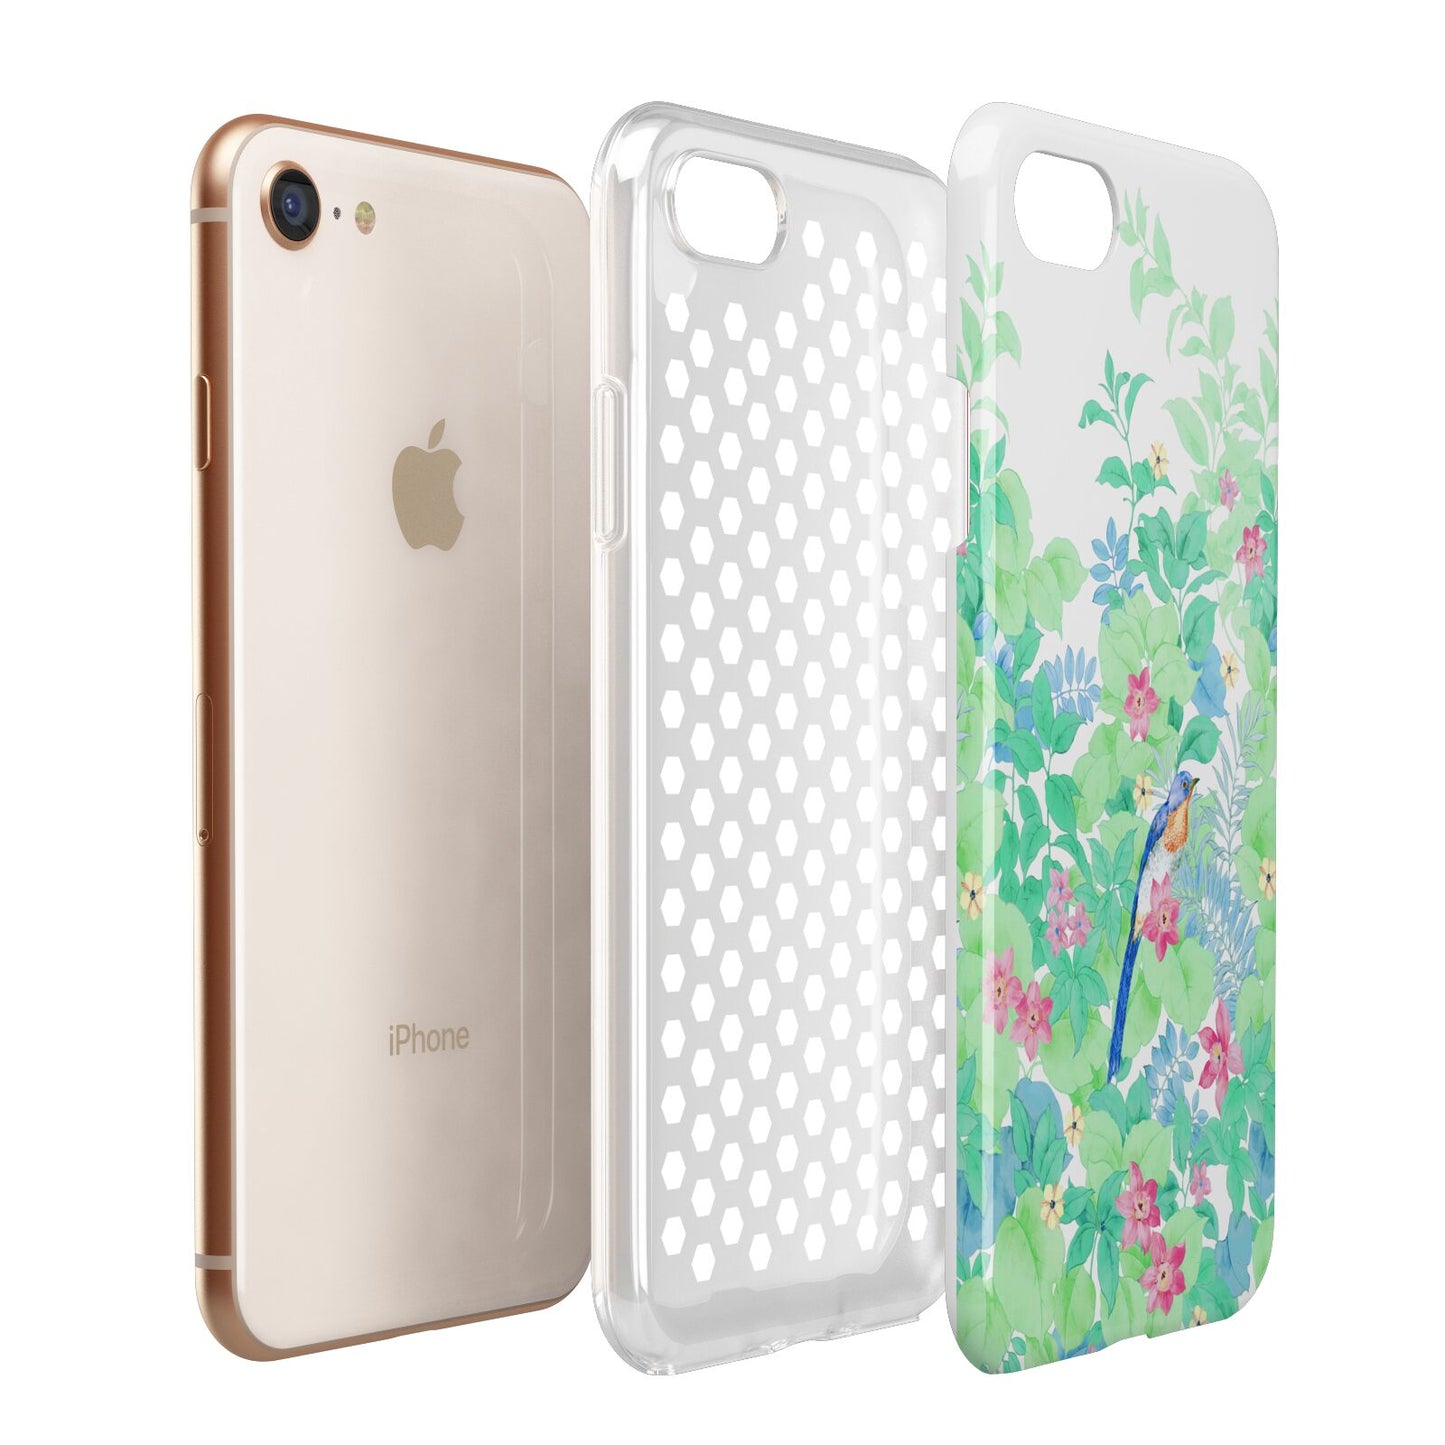 Watercolour Floral Apple iPhone 7 8 3D Tough Case Expanded View